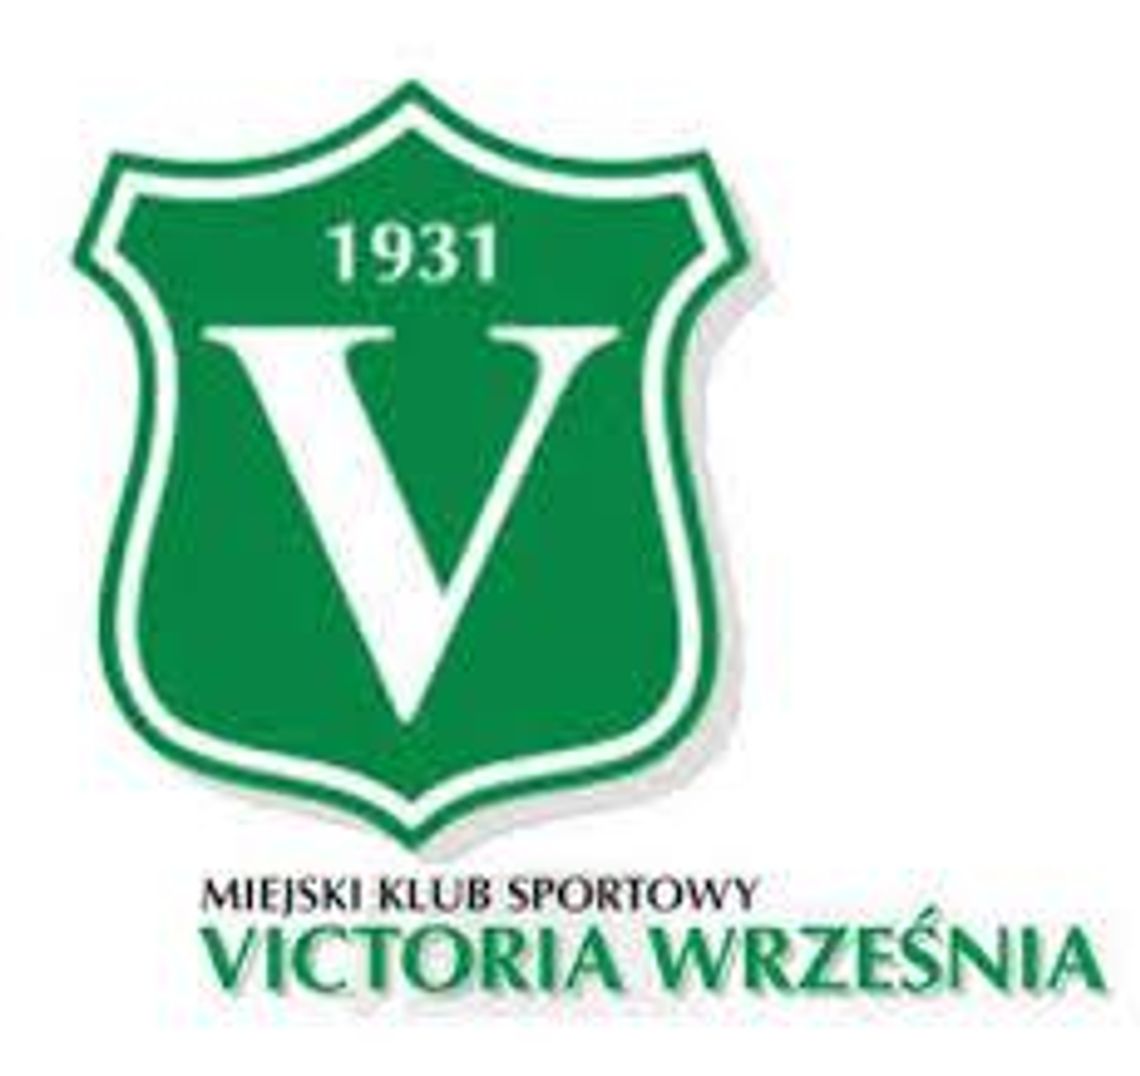 Victoria gospodarzem pierwszego meczu z Mieszkiem!